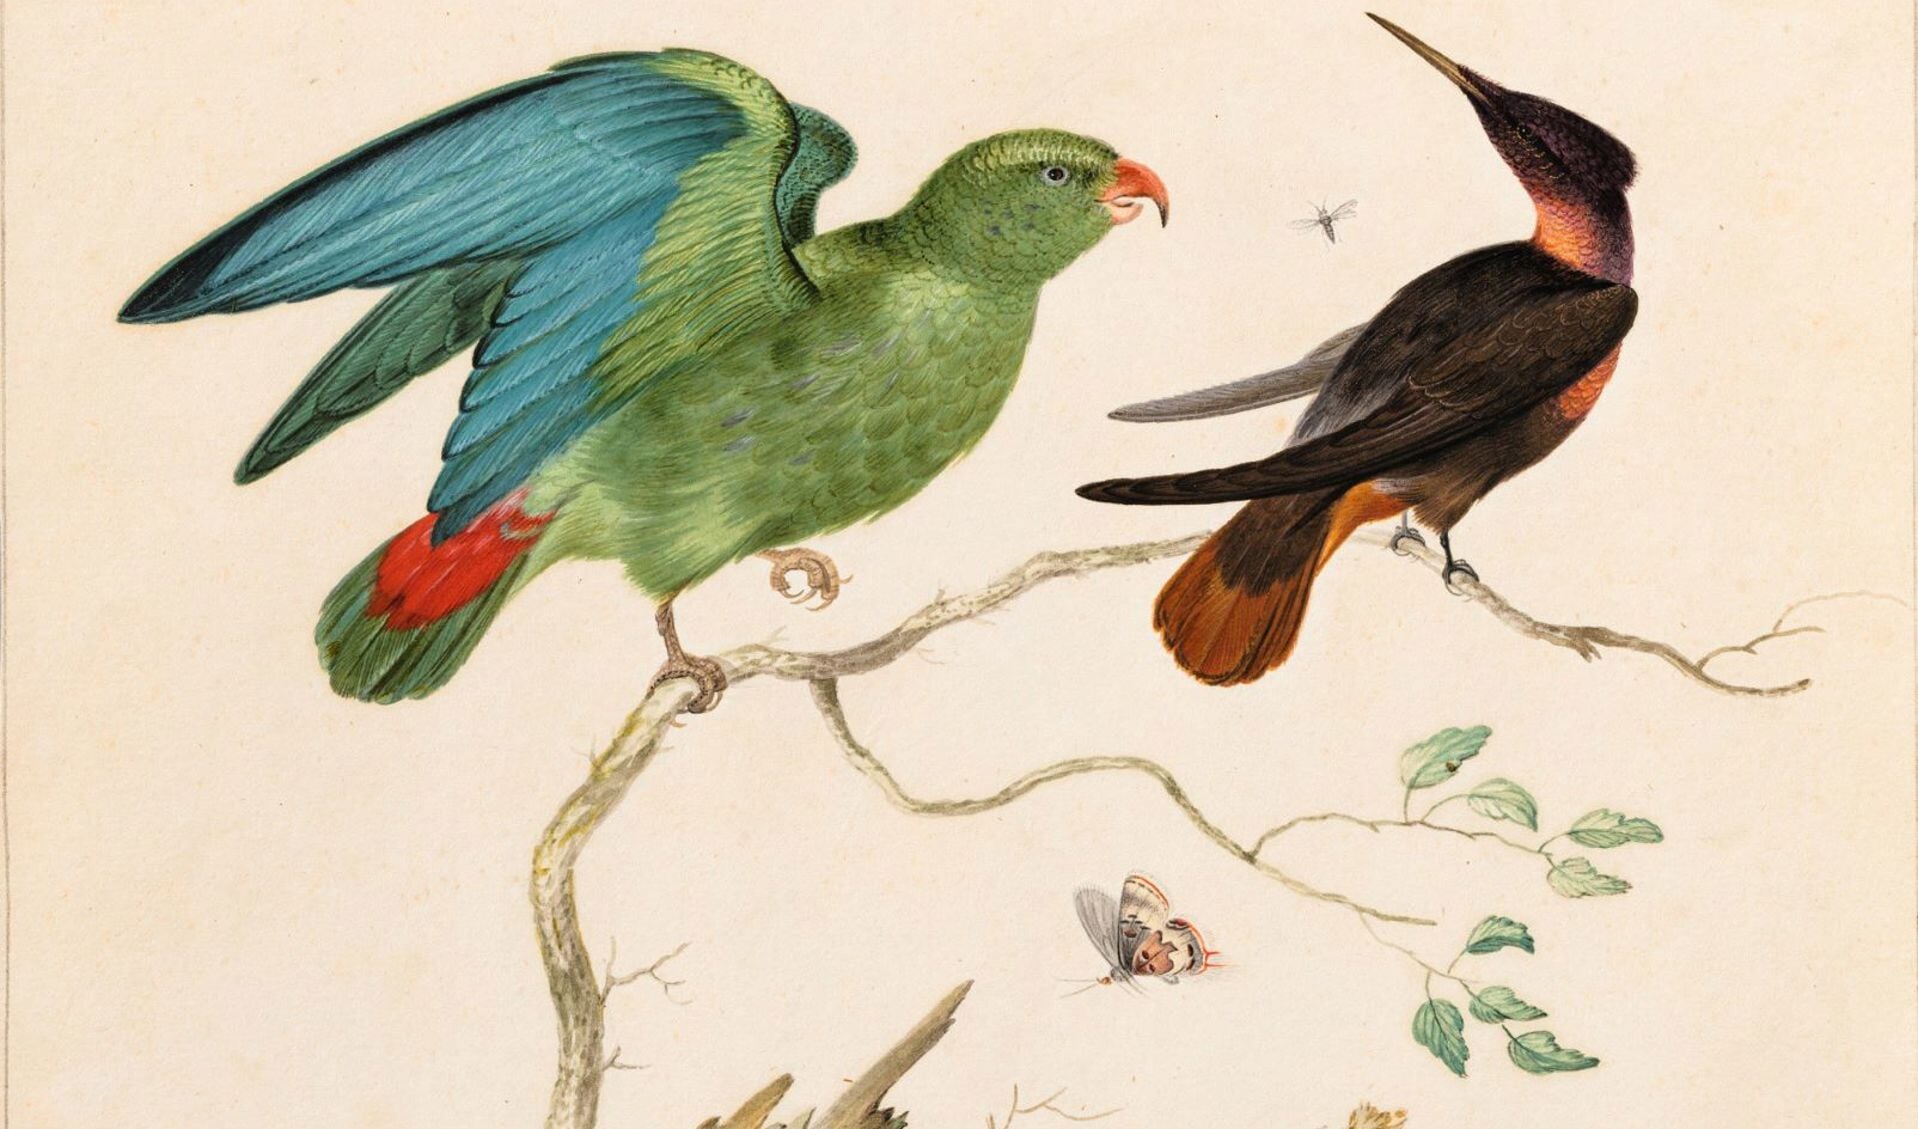 De levendige afbeelding van de exotische vogel laat zien hoe nieuwsgierig mensen in de zeventiende eeuw waren naar wat er buiten hun eigen blikveld te zien was.